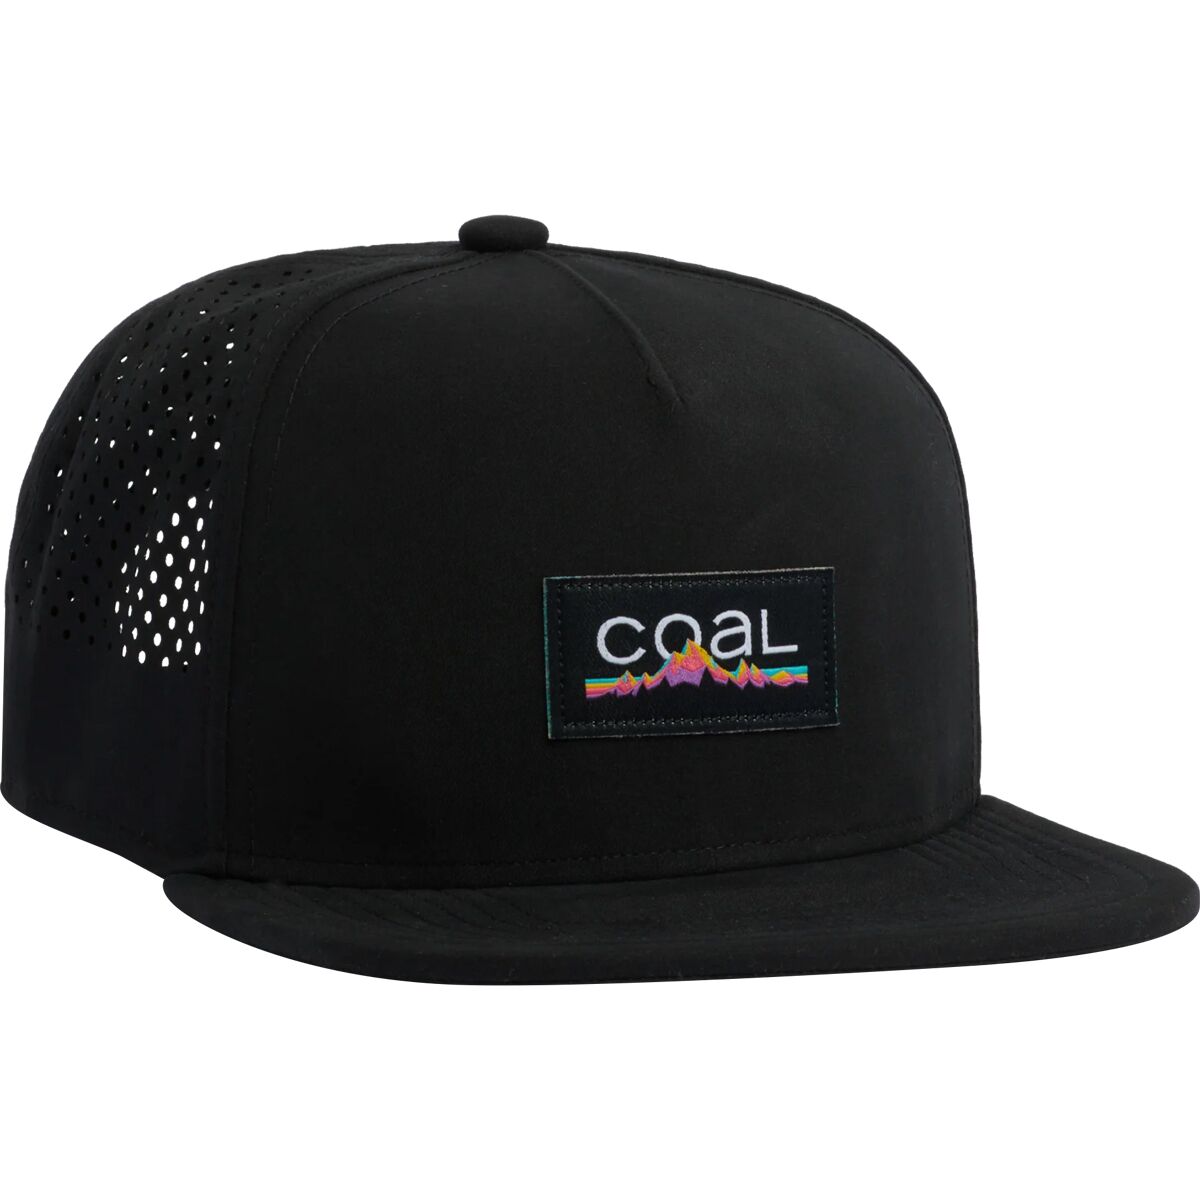 Coal Headwear Robertson Trucker Hat